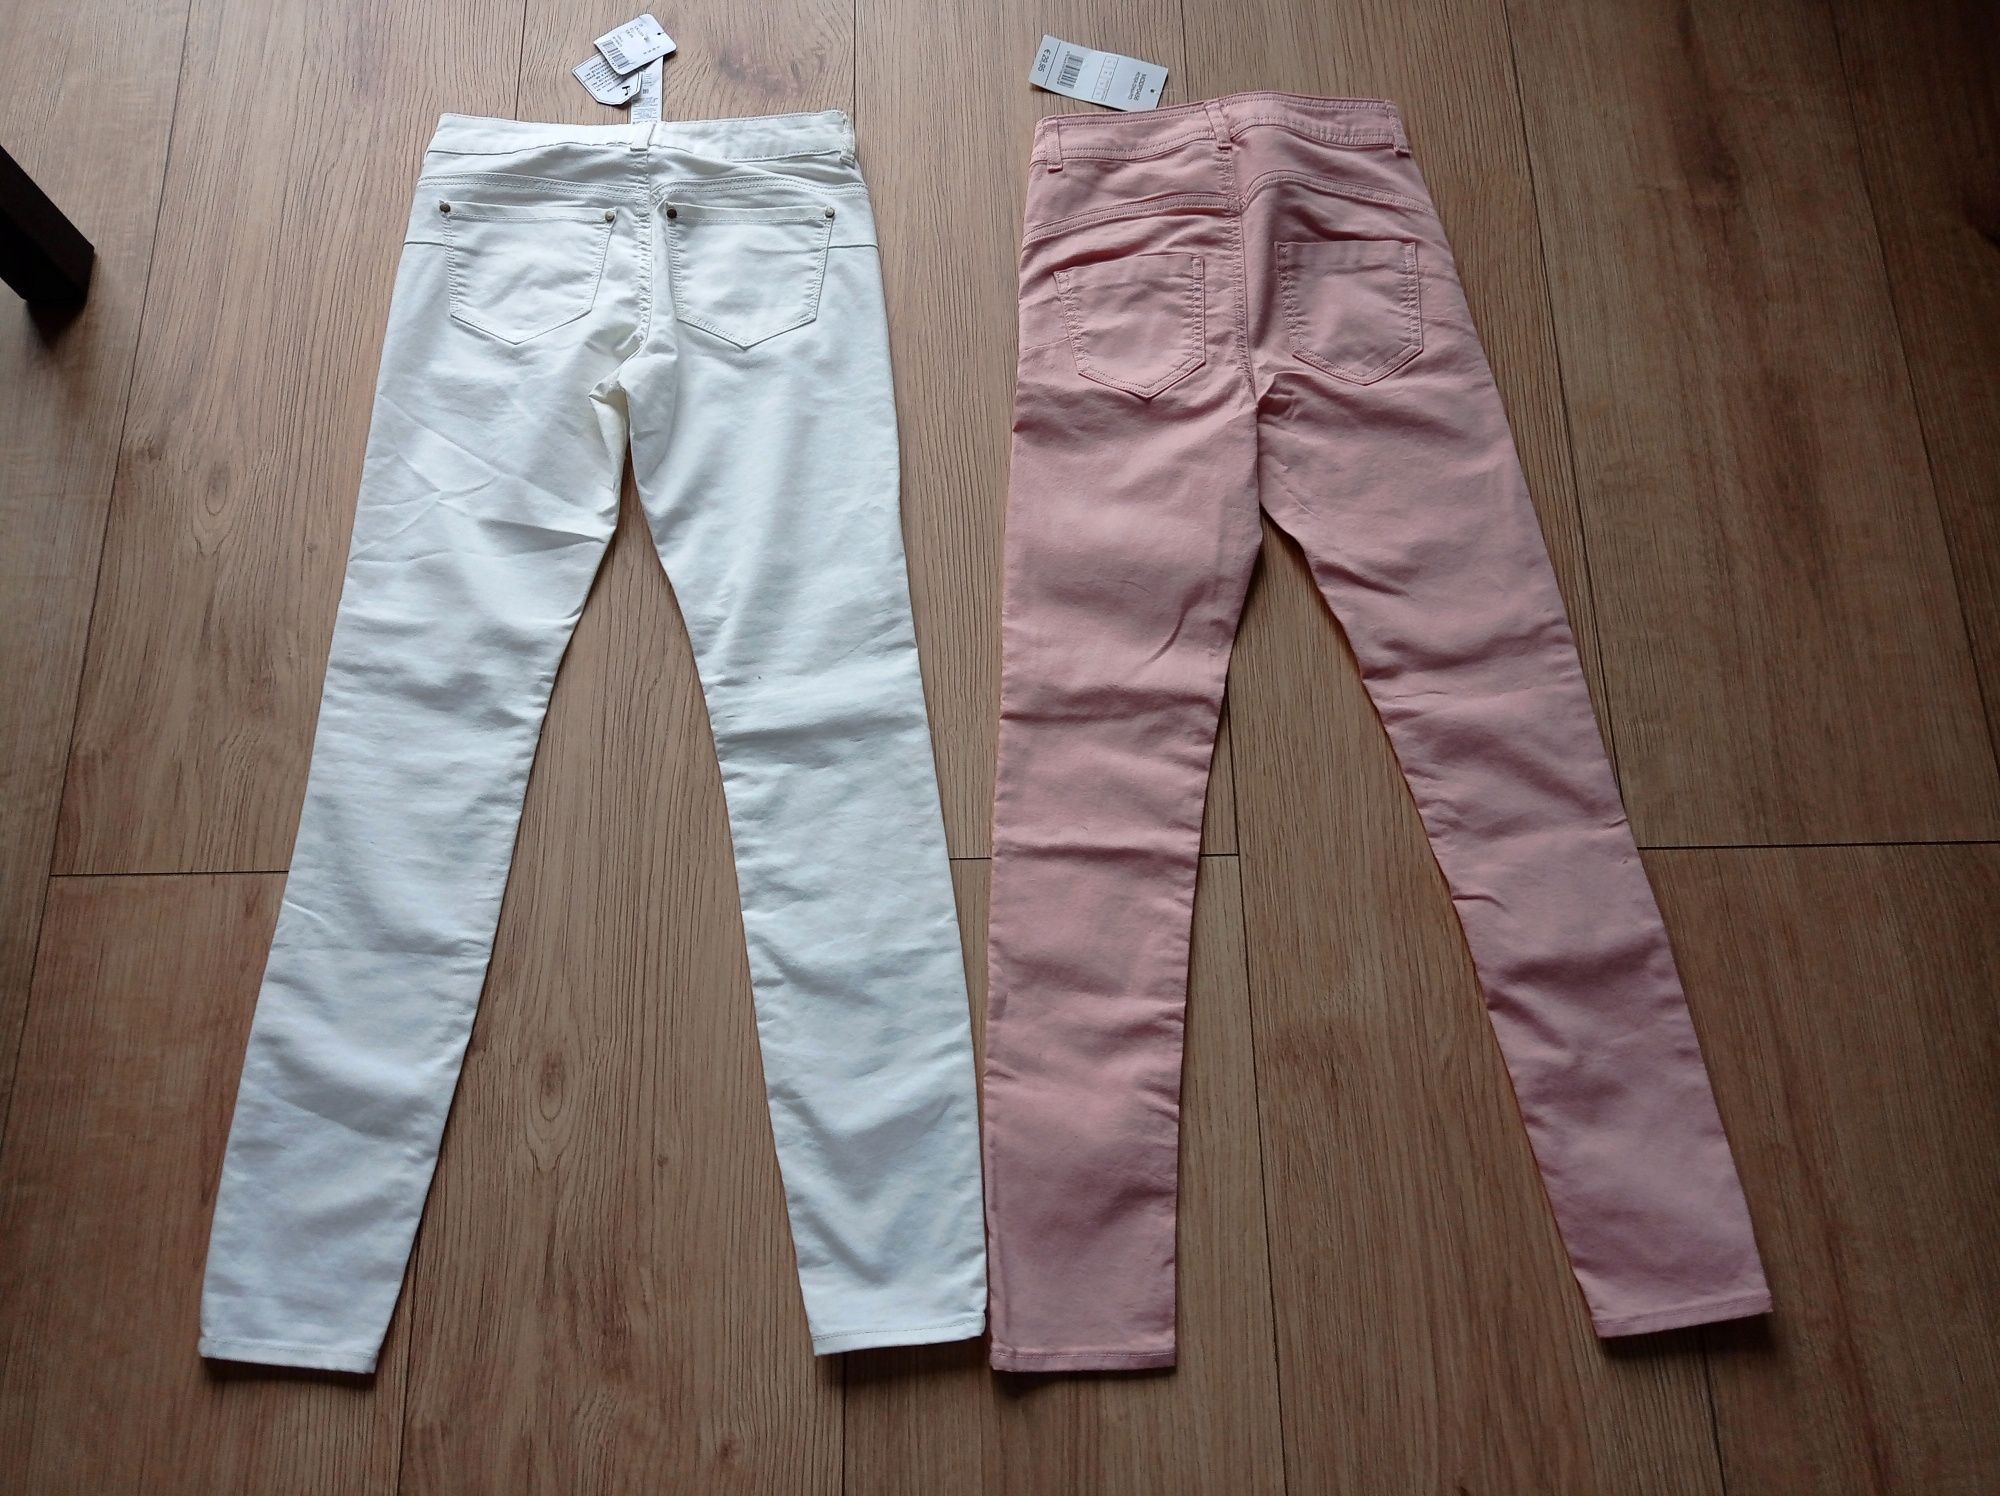 Spodnie Calzedonia,Tezenis r S.2 pary Firmowe spodnie wiosenne 152/158